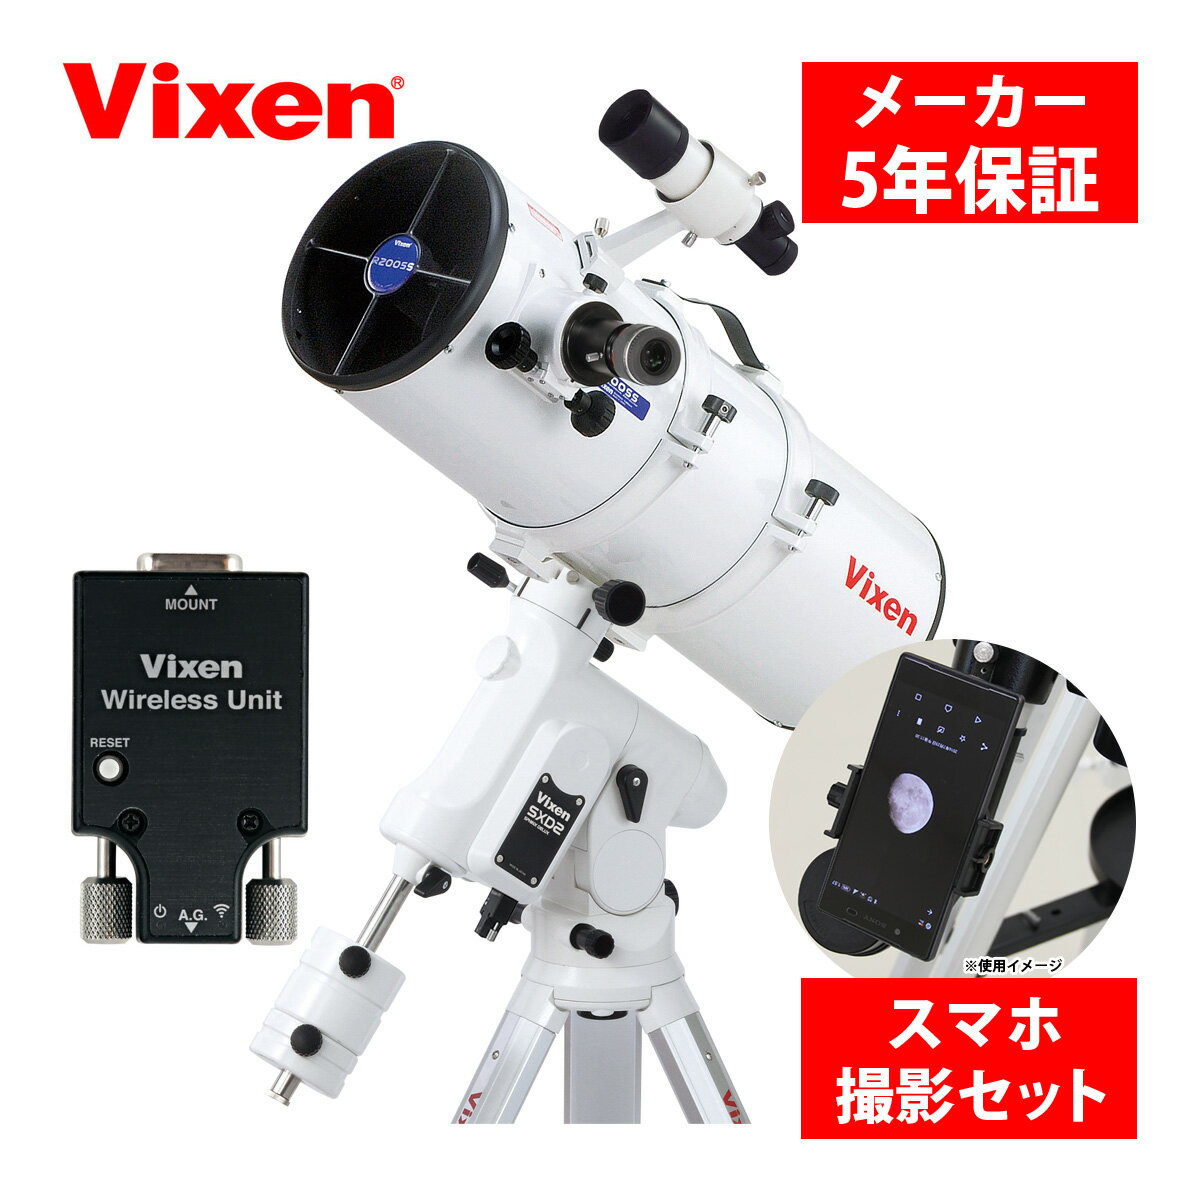 天体望遠鏡 自動追尾 SXD2WL-R200SS 三脚 スマホ 撮影 セット 赤道儀 天体観測 星 星空ガイドブック付き スマートフォン タブレット ipad 操作 ビクセン Vixen